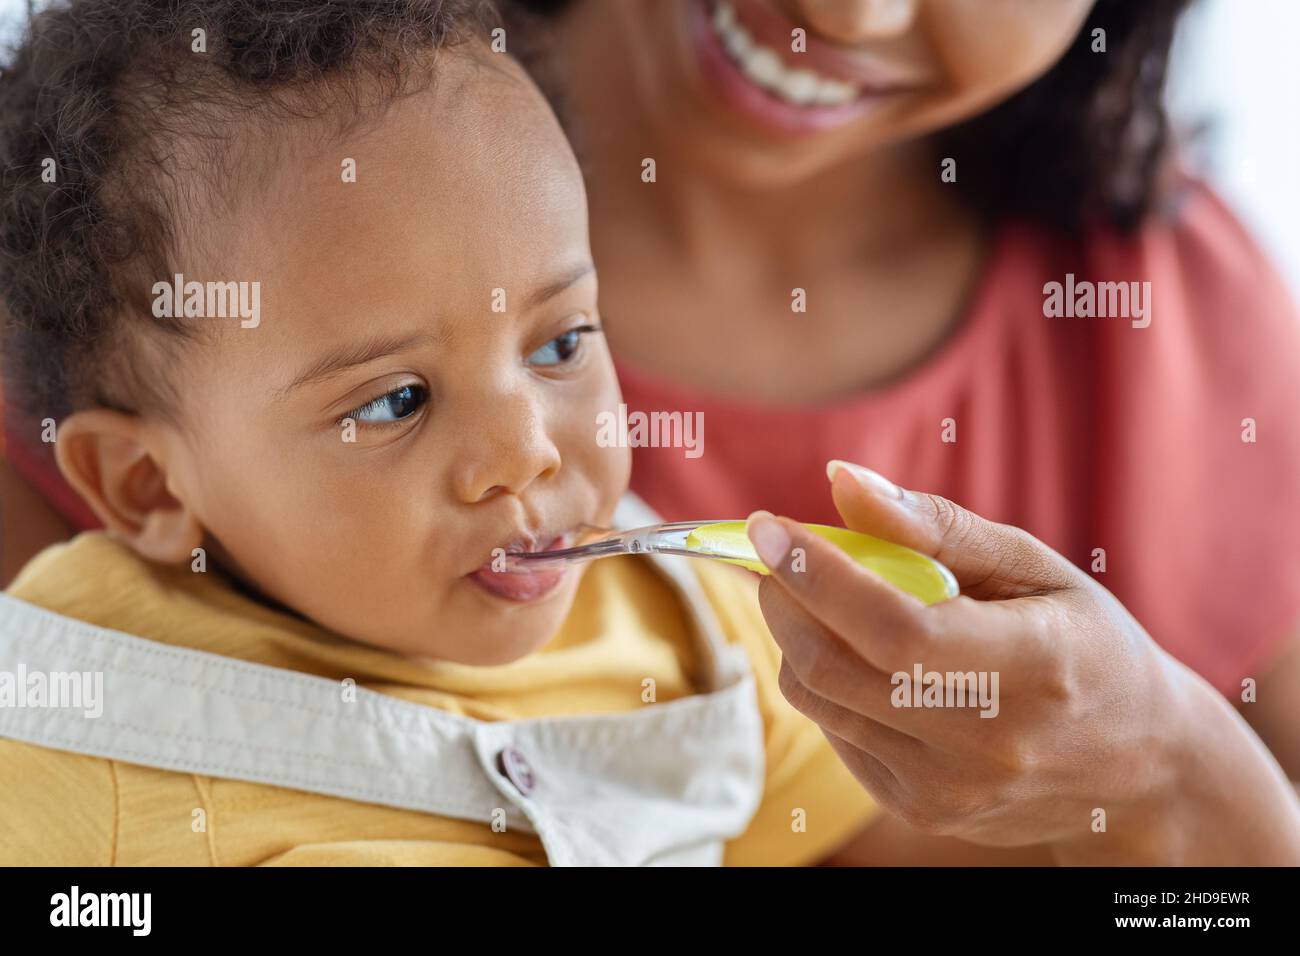 https://c8.alamy.com/comp/2HD9EWR/baby-feeding-closeup-of-cute-little-black-infant-boy-eating-from-spoon-2HD9EWR.jpg